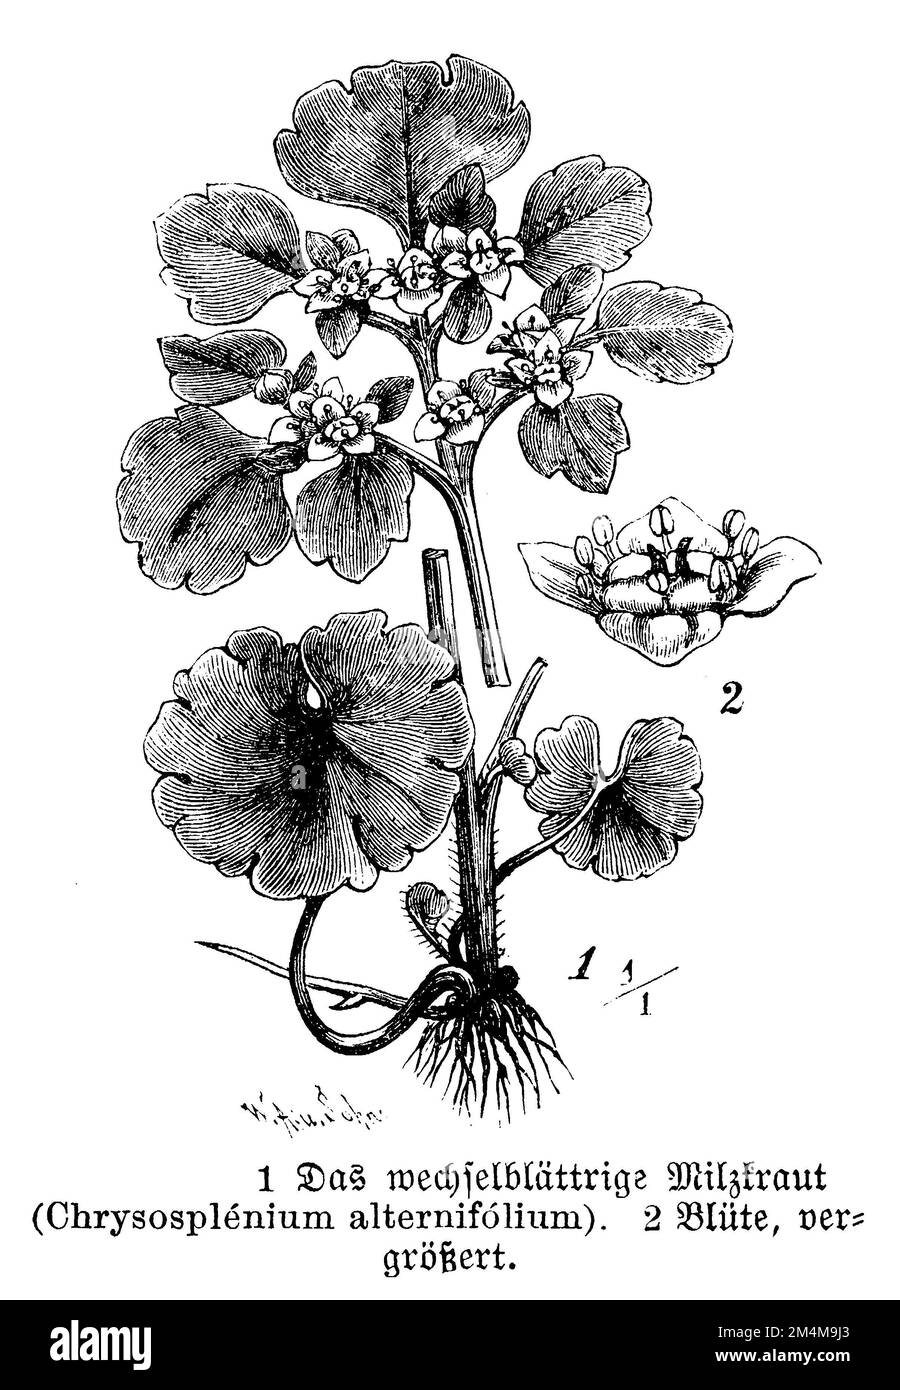 alternate-leaf golden saxifrage, Chrysosplenium alternifolium, W. A[arland] u. Sohn  (botany book, 1888), Wechselblättriges Milzkraut, Cresson de rocher Stock Photo